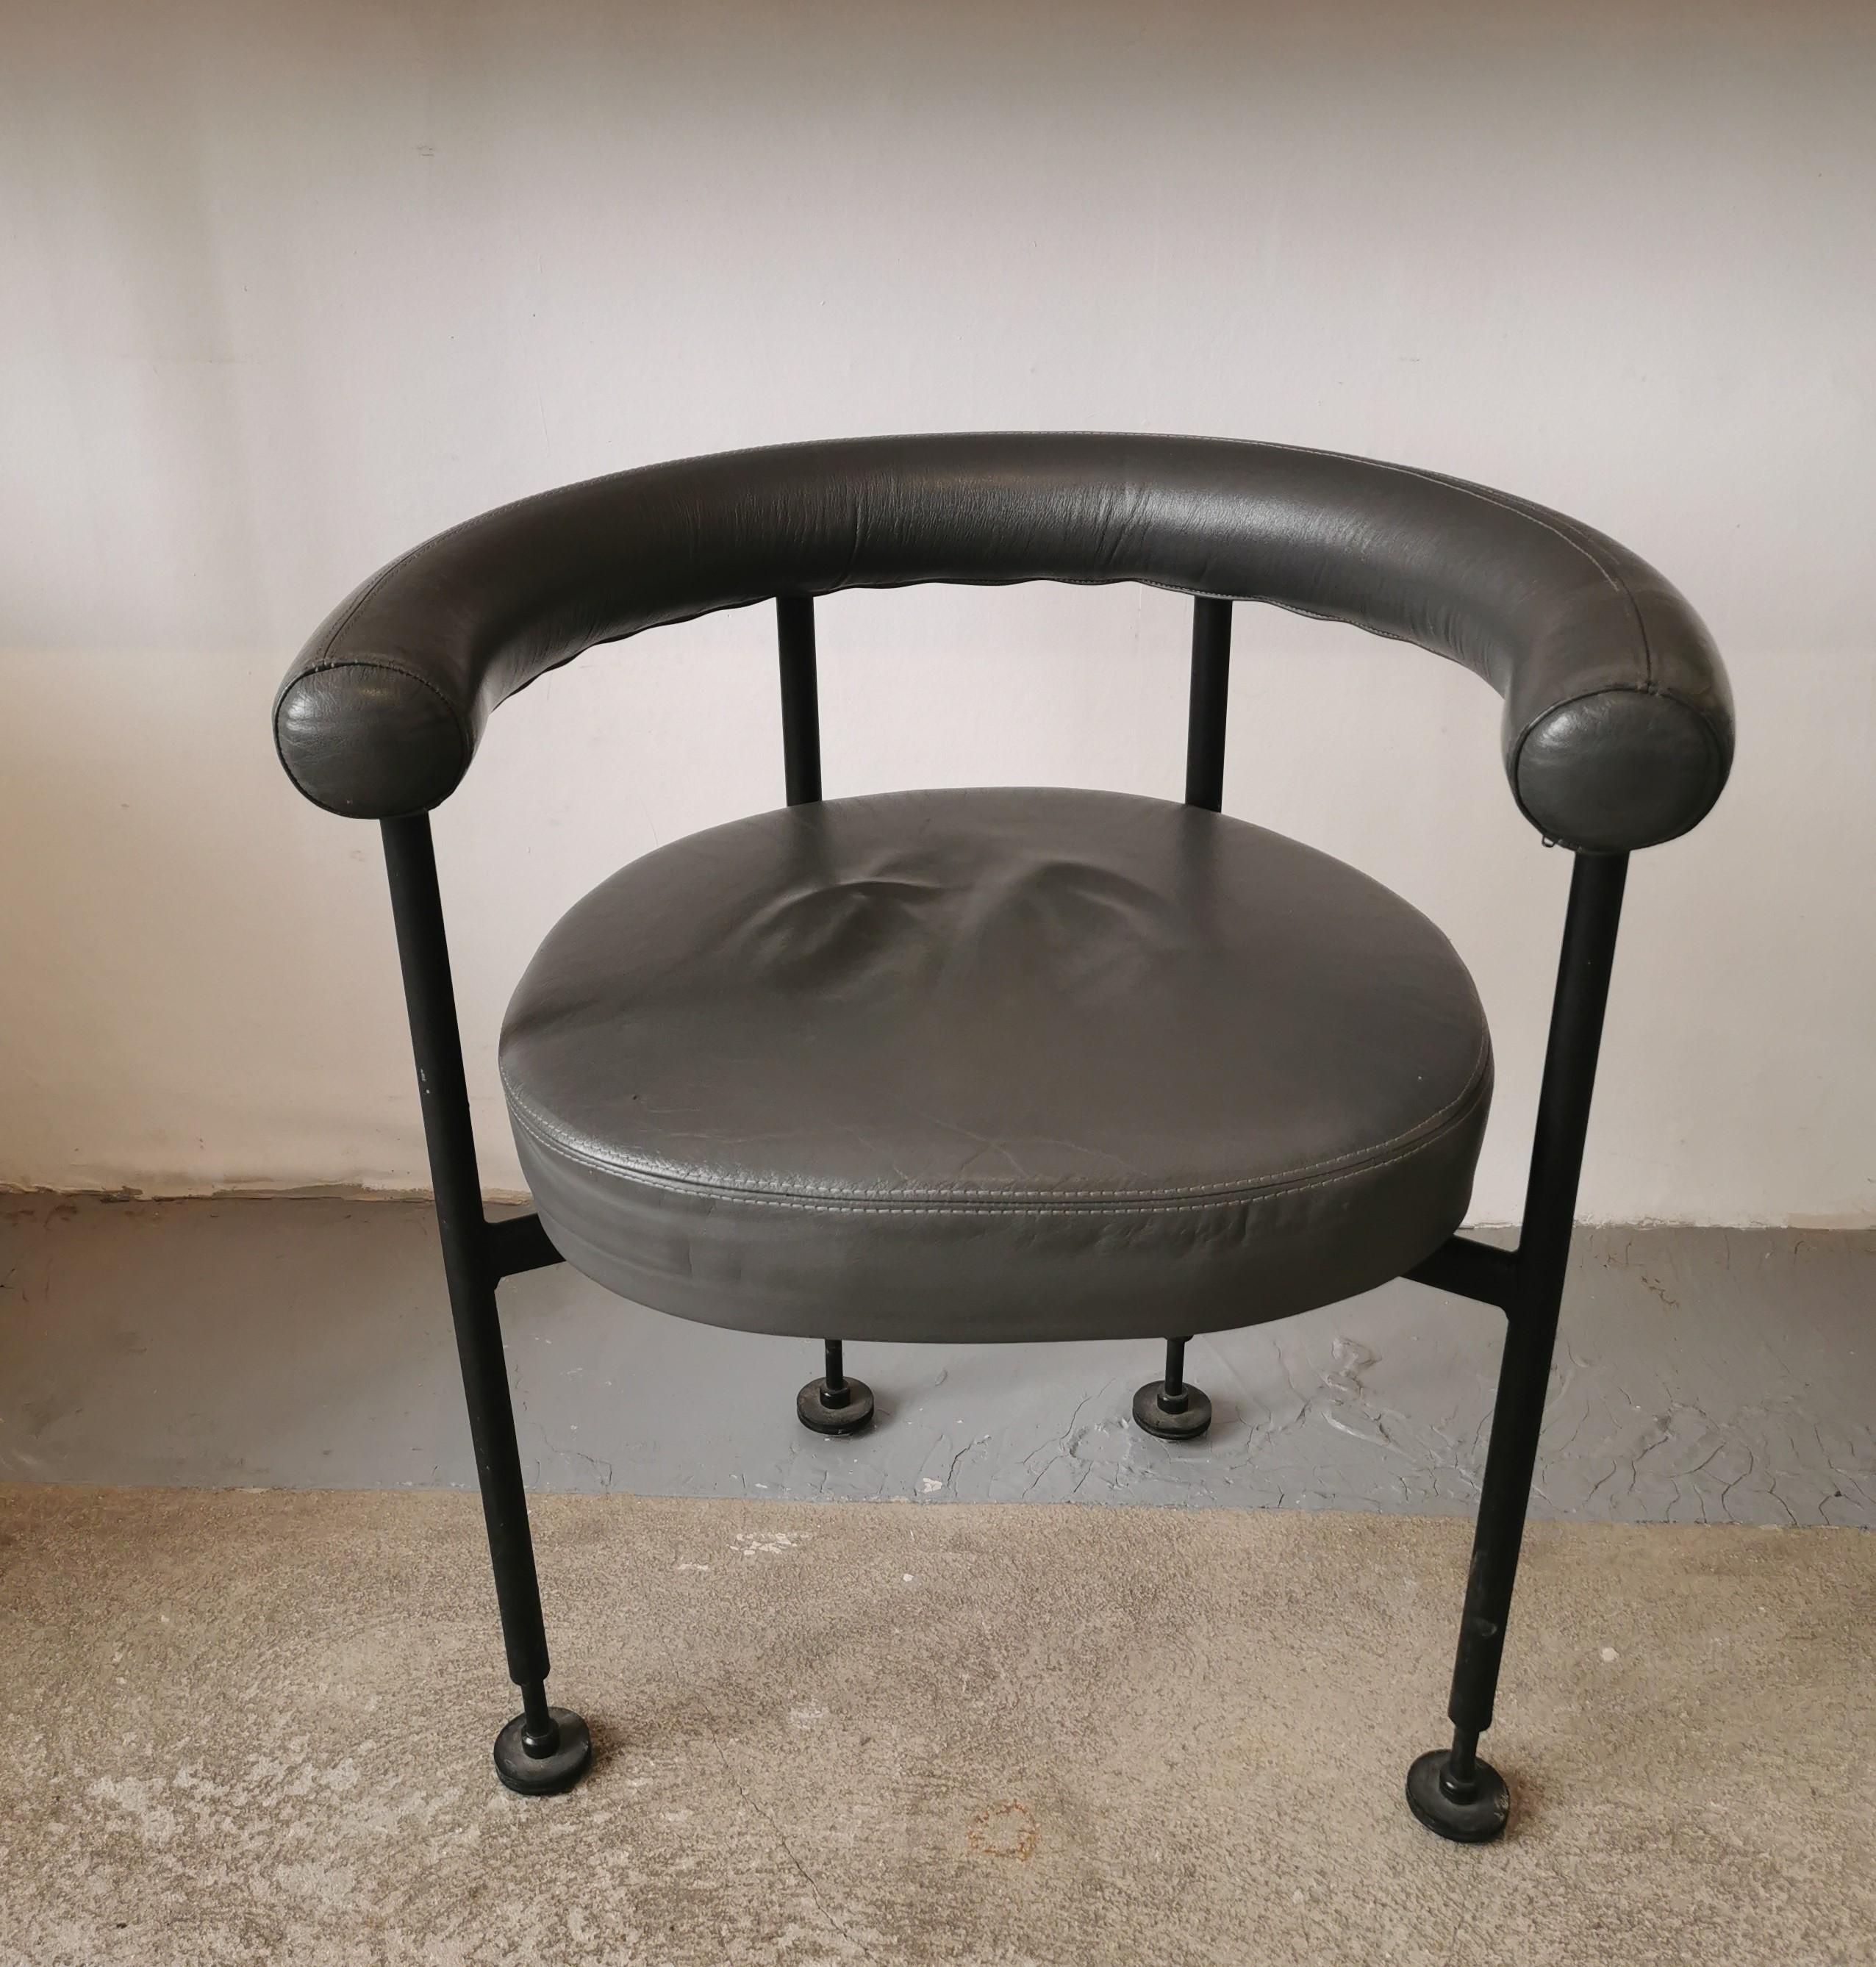 paire de fauteuils fin des années 70 de Martin Visser, designer hollandais (1922-2009)
Martin Visser a réalisé du mobilier depuis son plus jeune âge, il a suivi une formation de dessinateur en architecture. 
 En 1954 il devient designer et réalise